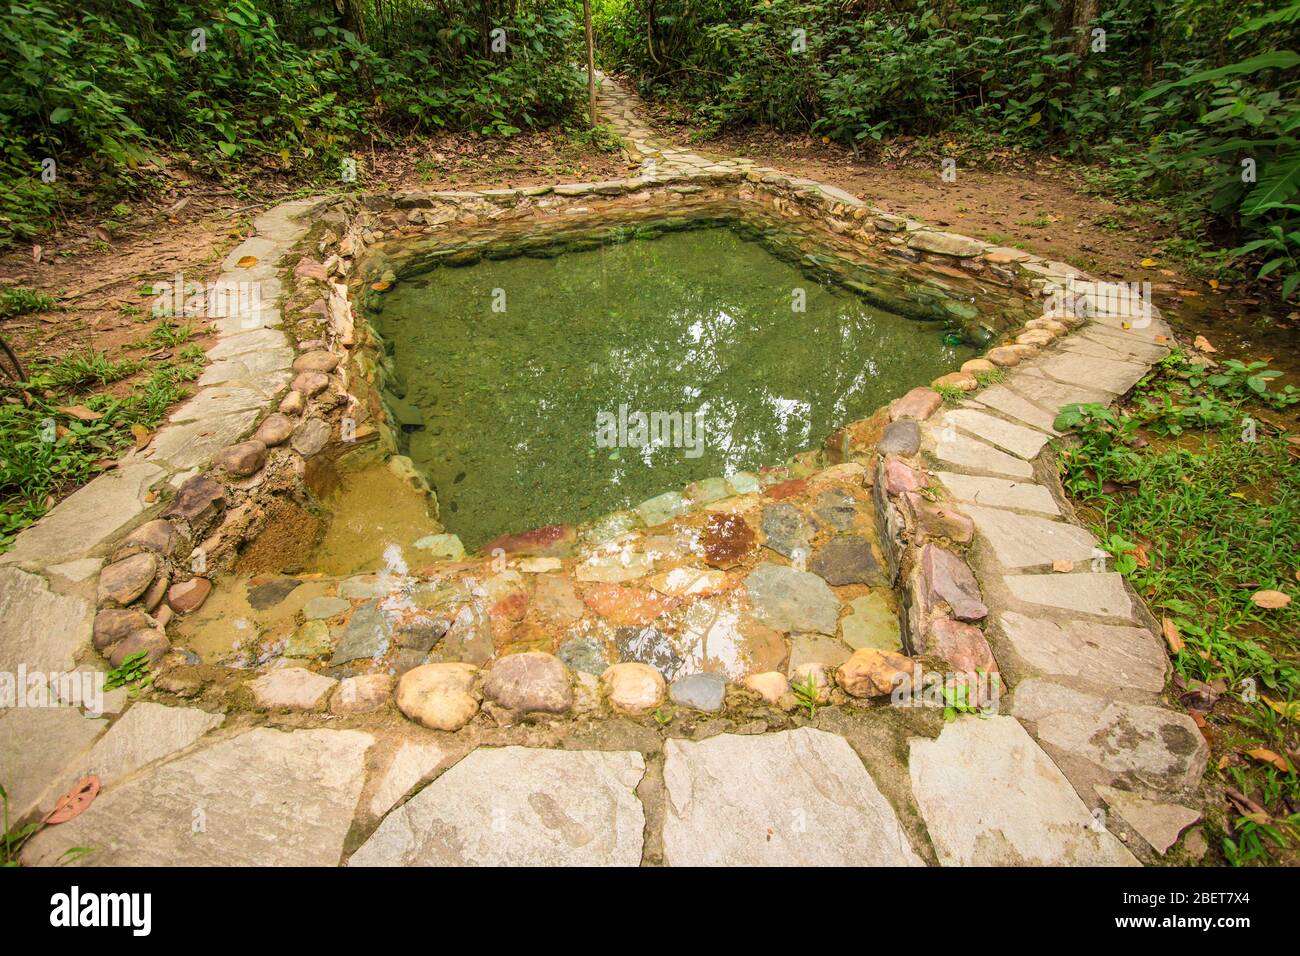 Jardim do Eden eau naturelle de la piscine. Chapada dos veadeiros, Goias, Brésil Banque D'Images